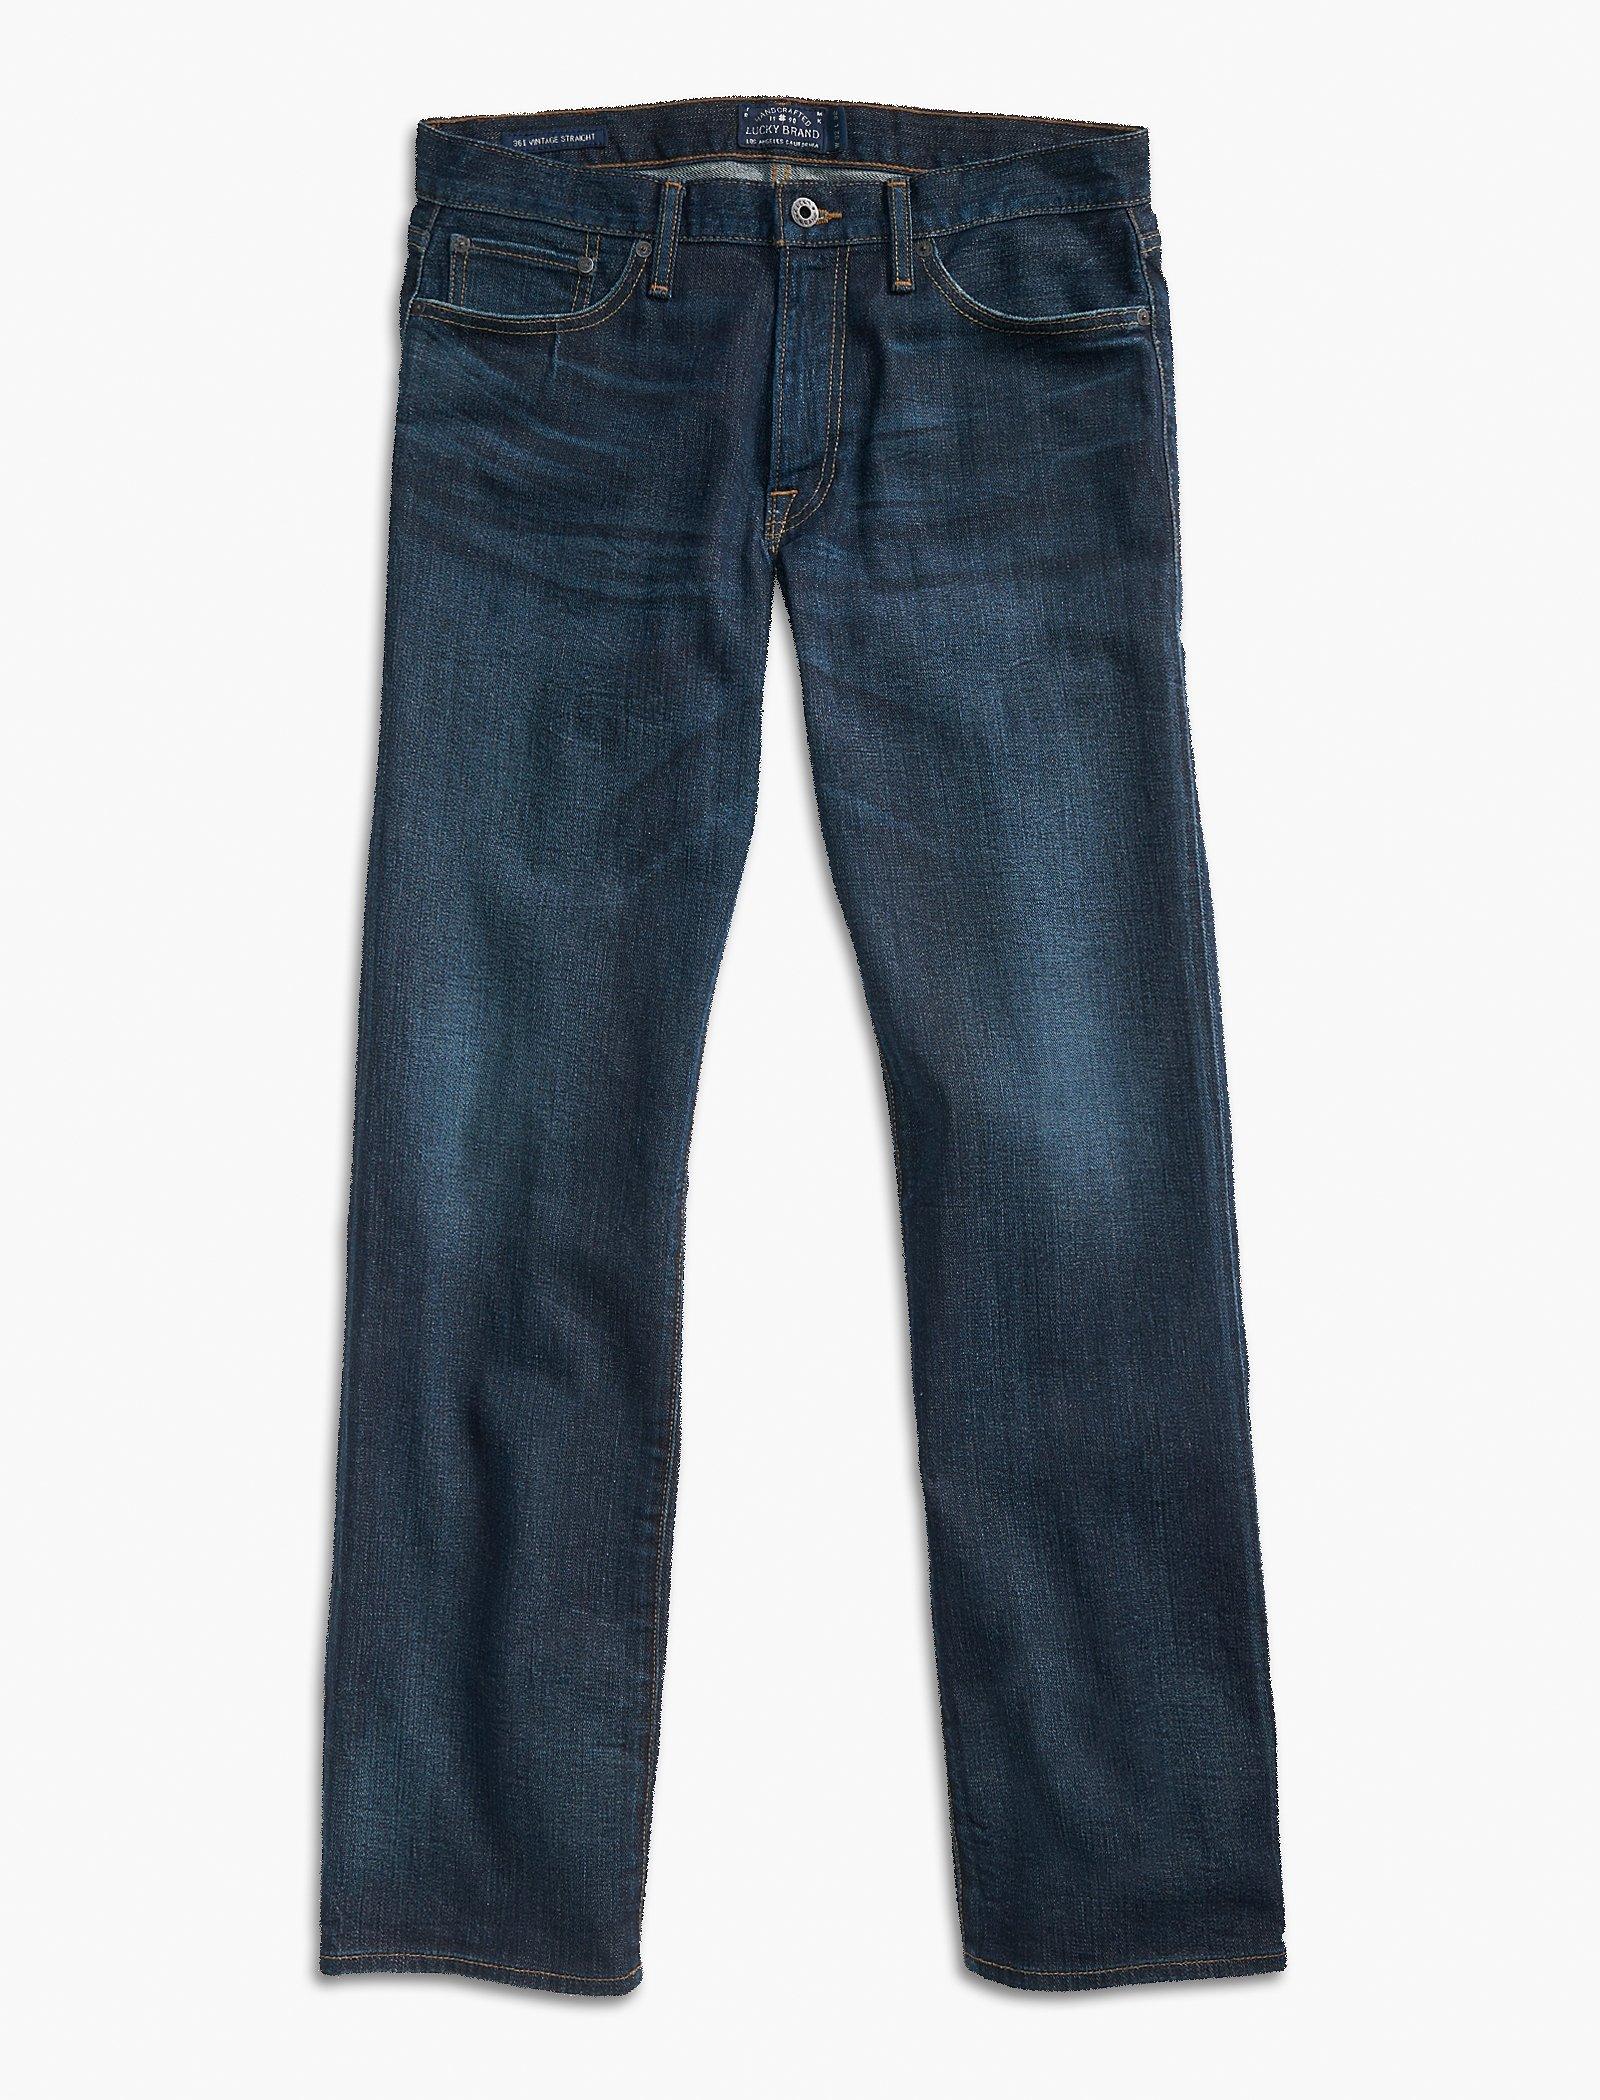 best affordable denim jeans